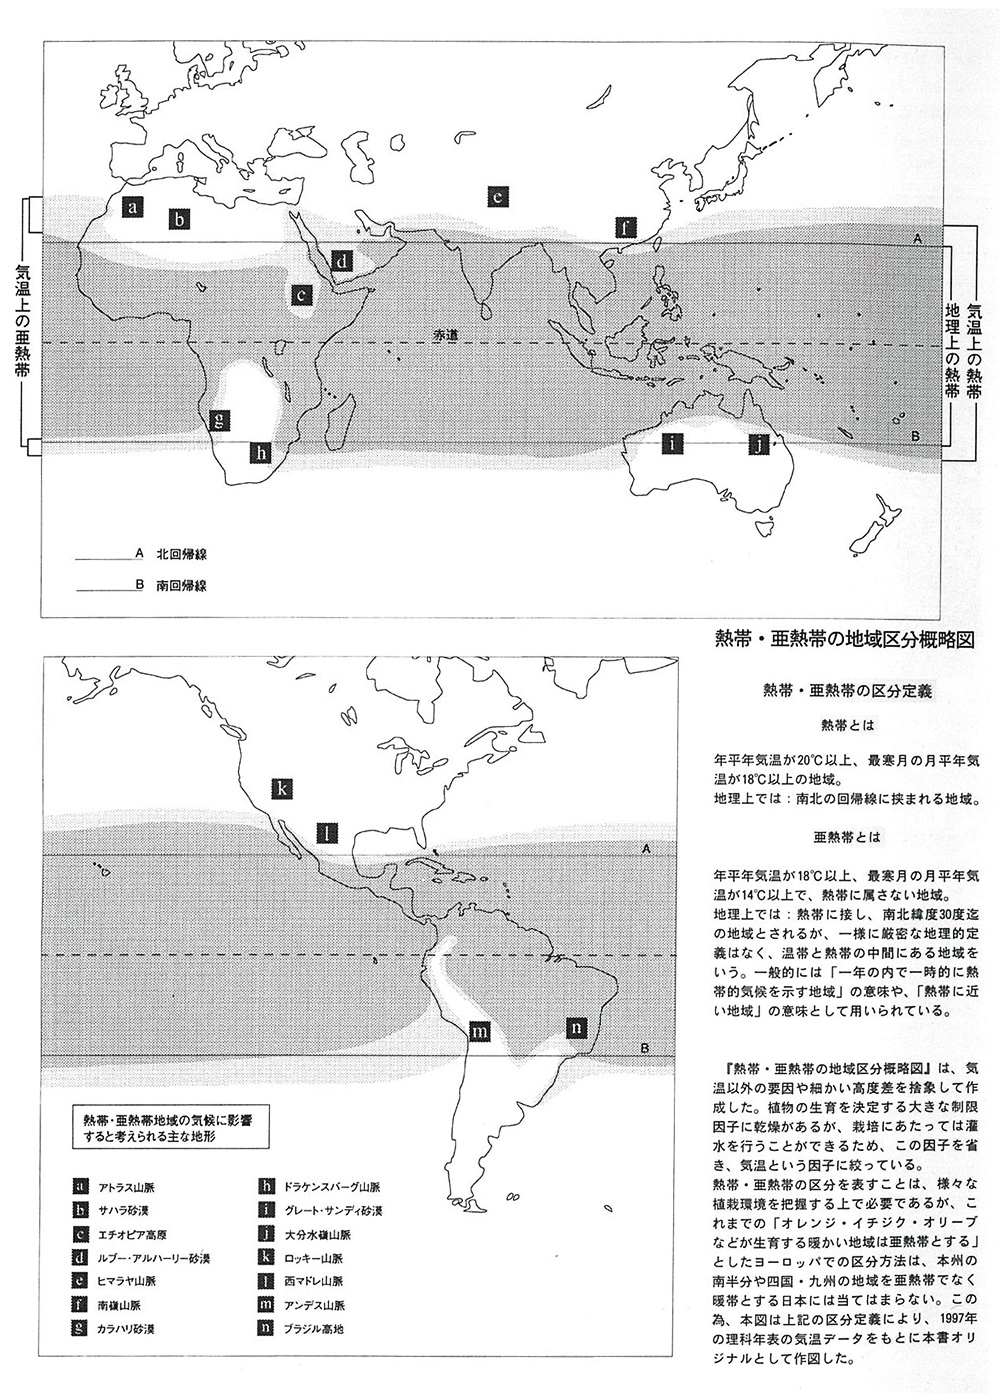 熱帯・亜熱帯の地域区分概略図